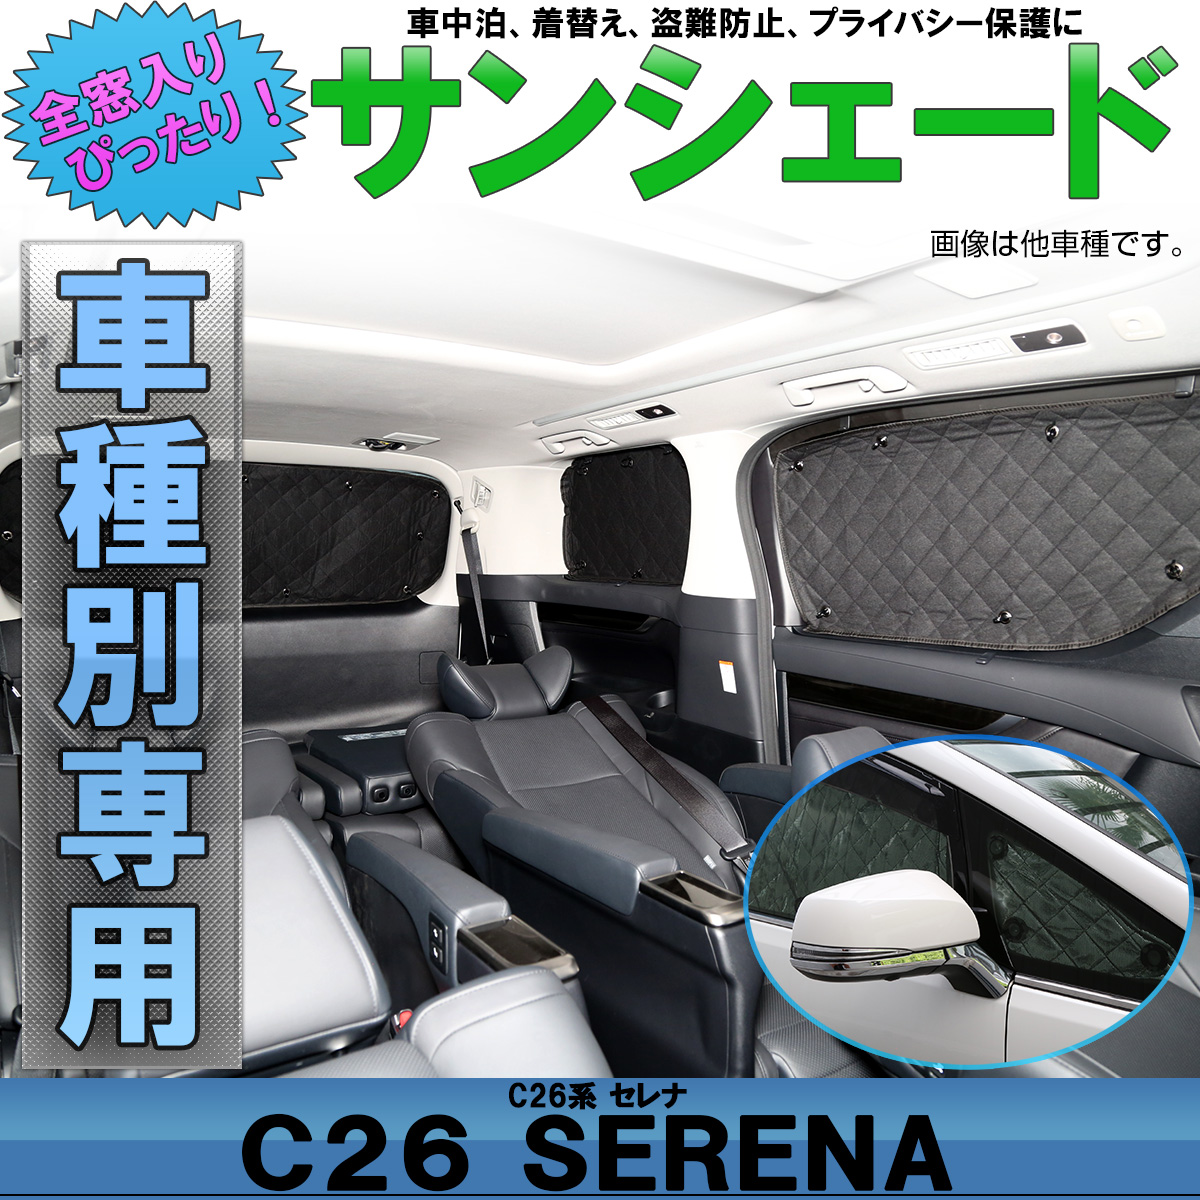 サンシェード C26 セレナ 専用設計 全窓用セット 5層構造 ブラックメッシュ 車中泊 プライバシー保護 ニッサン S-649